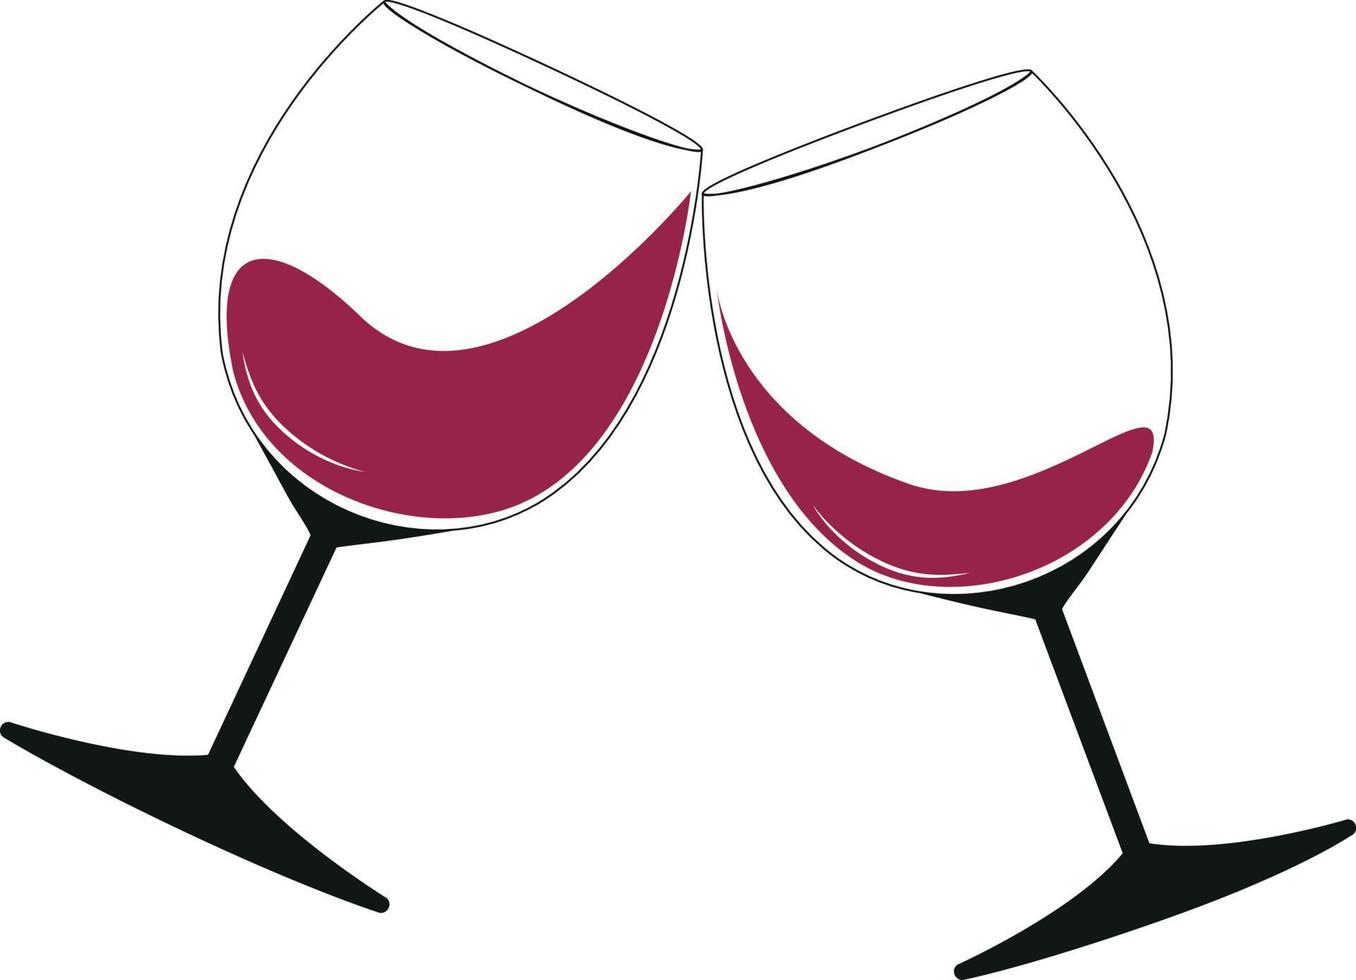 zwei gläser rotwein in neigung, anstoßende gläser feiertoast vektor